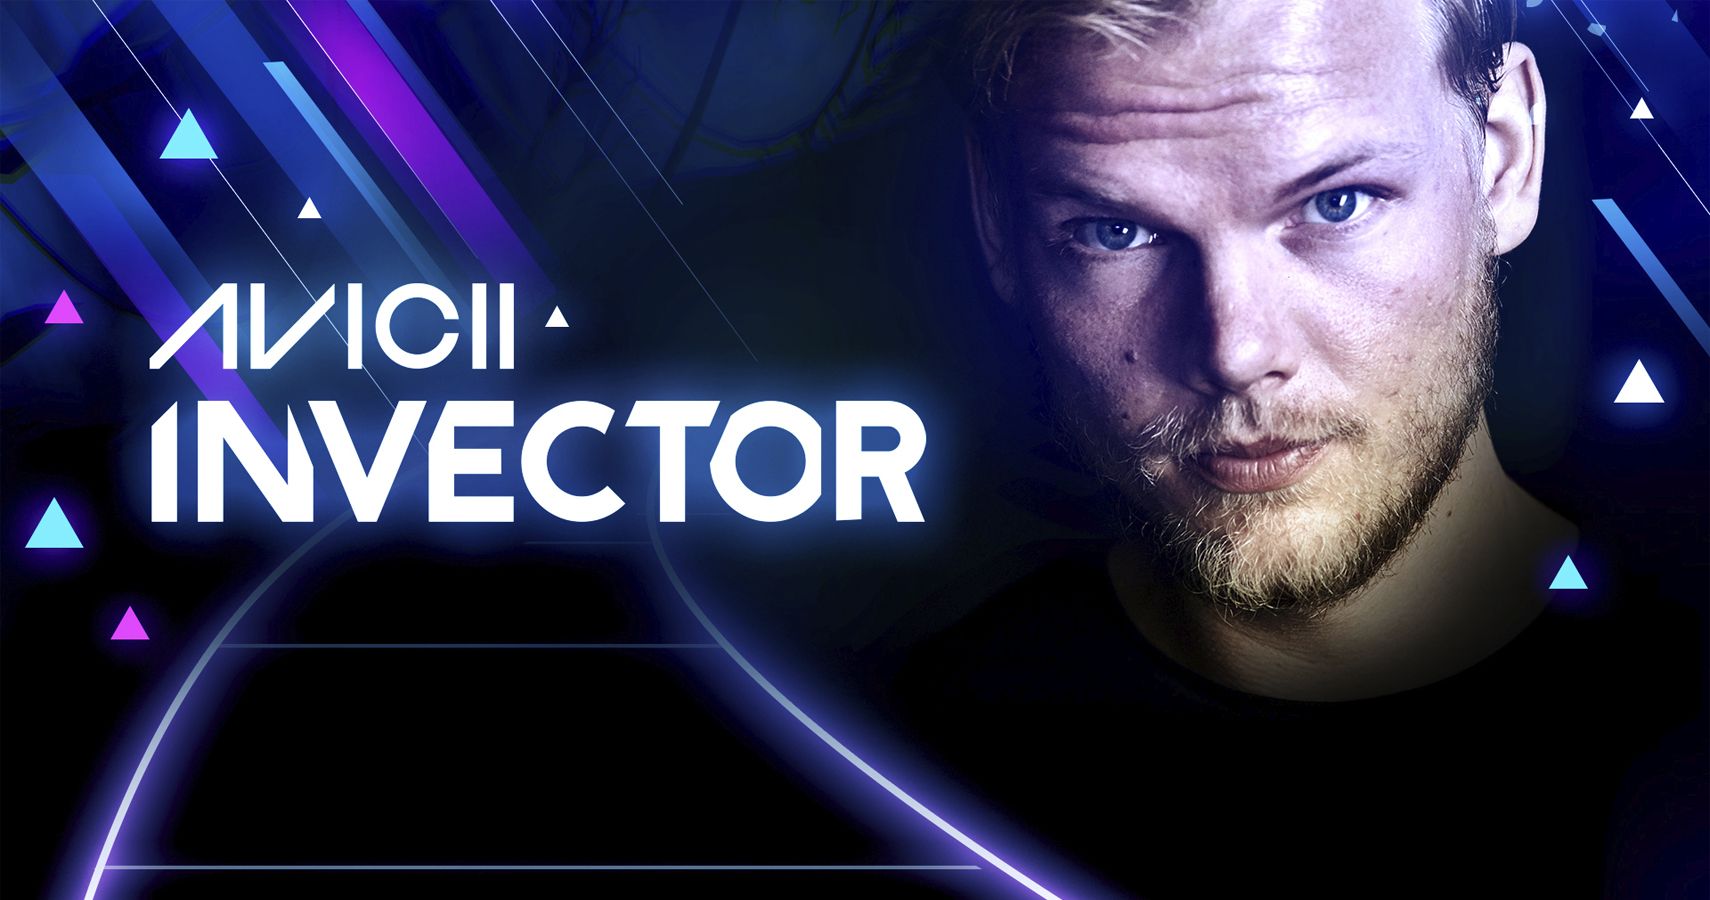 Invector, Com Astro da Música Eletrônica Avicii, Decola em Breve no PS4 –  PlayStation.Blog BR